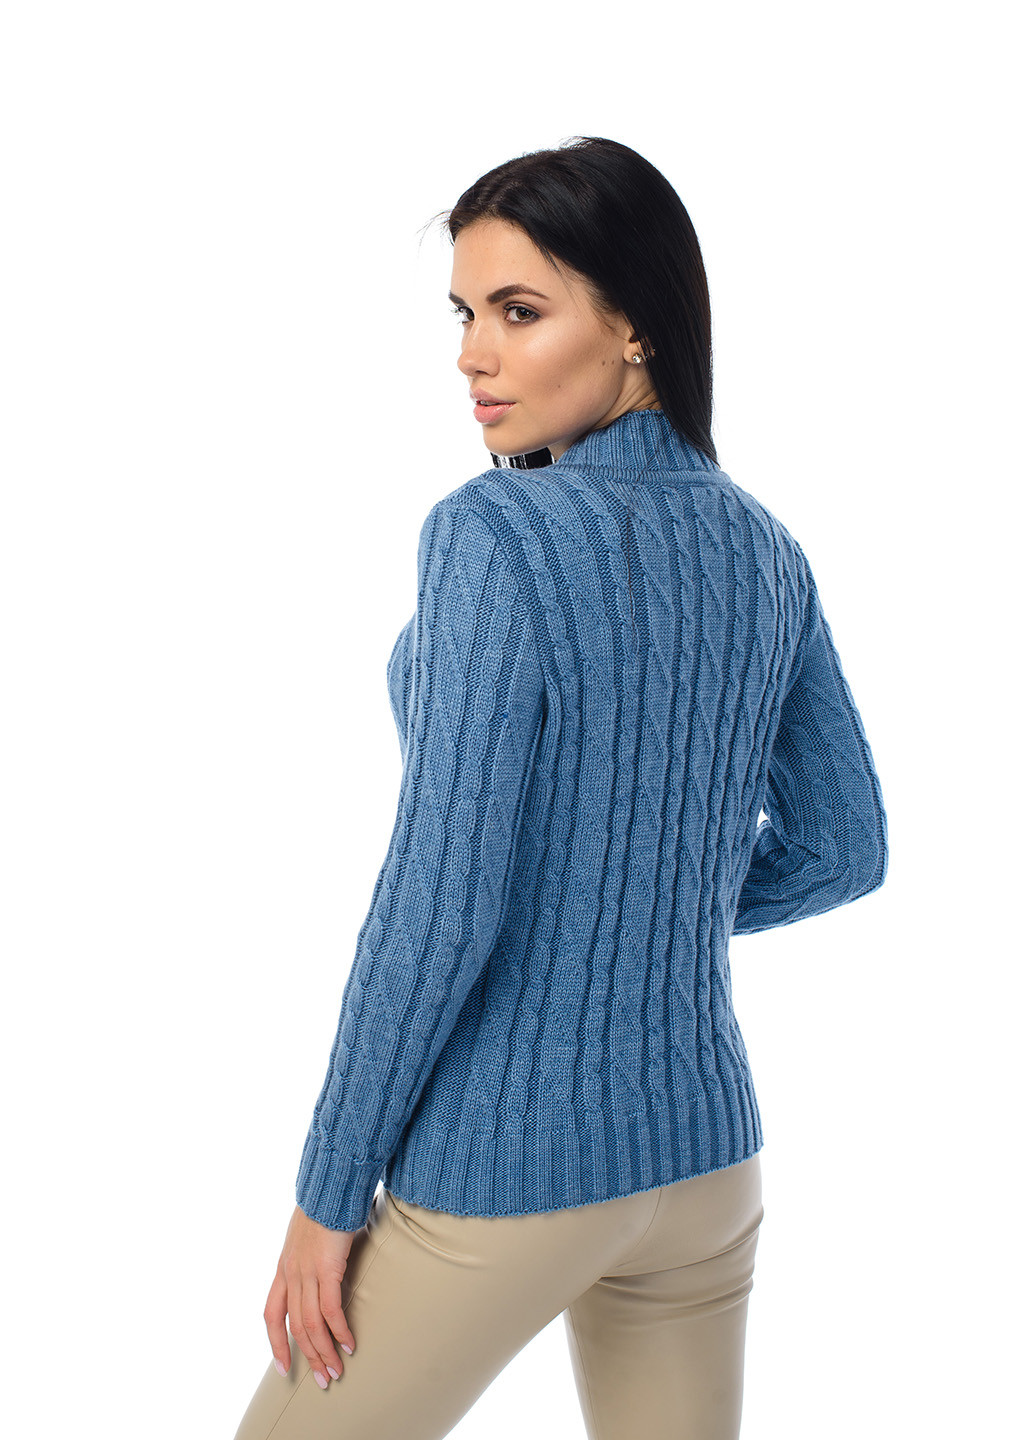 Сіро-голубий зимовий жіночий м'який светр з коміром стійка SVTR